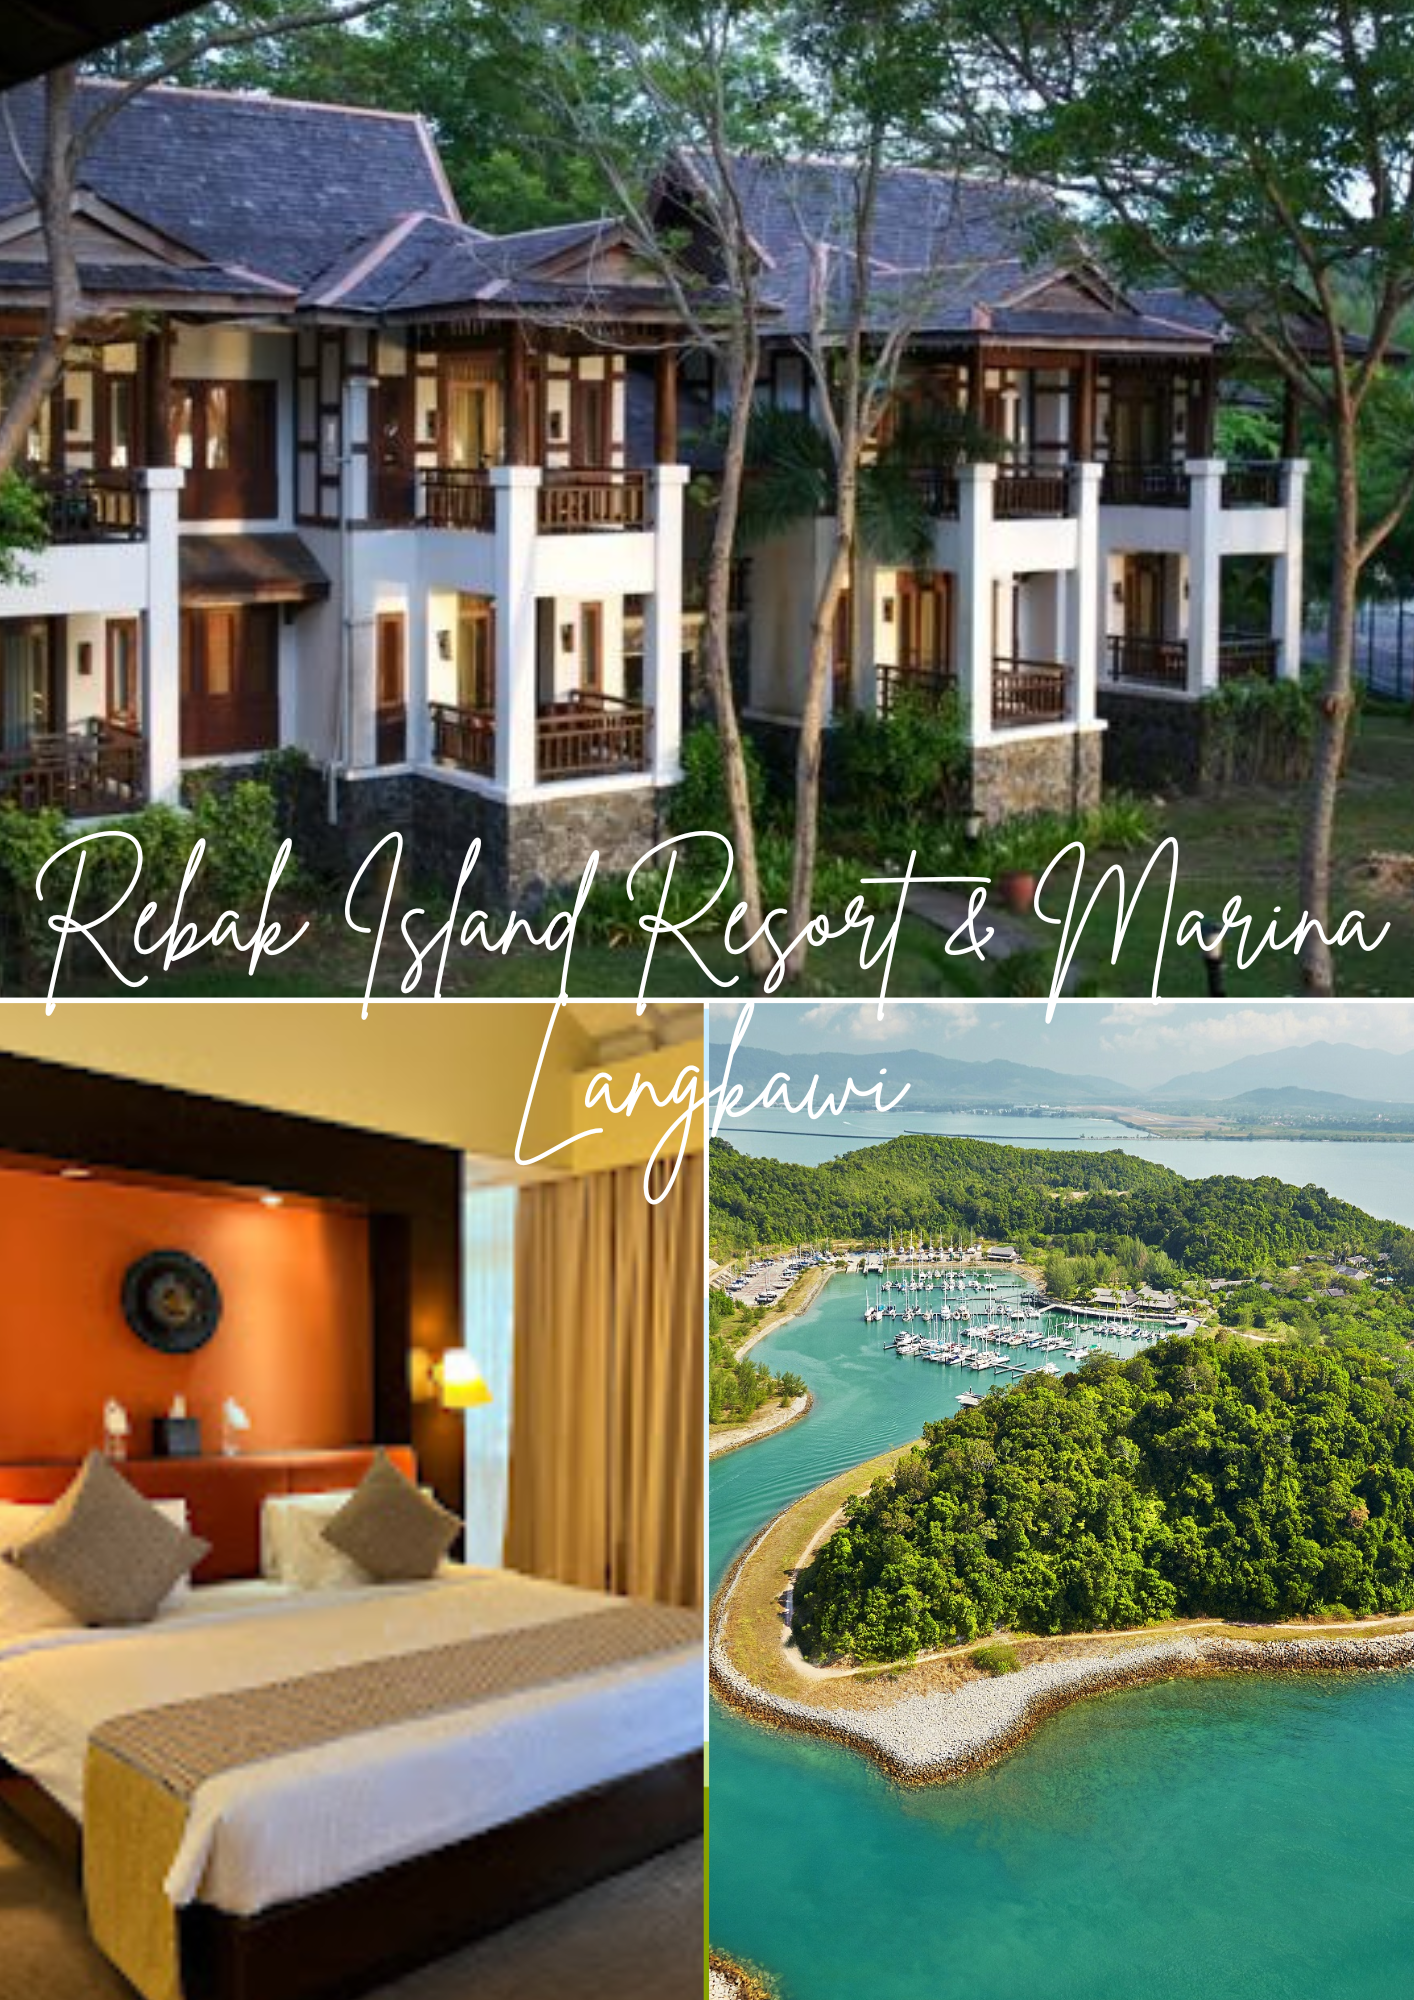 Rebak Island Resort & Marina Langkawi